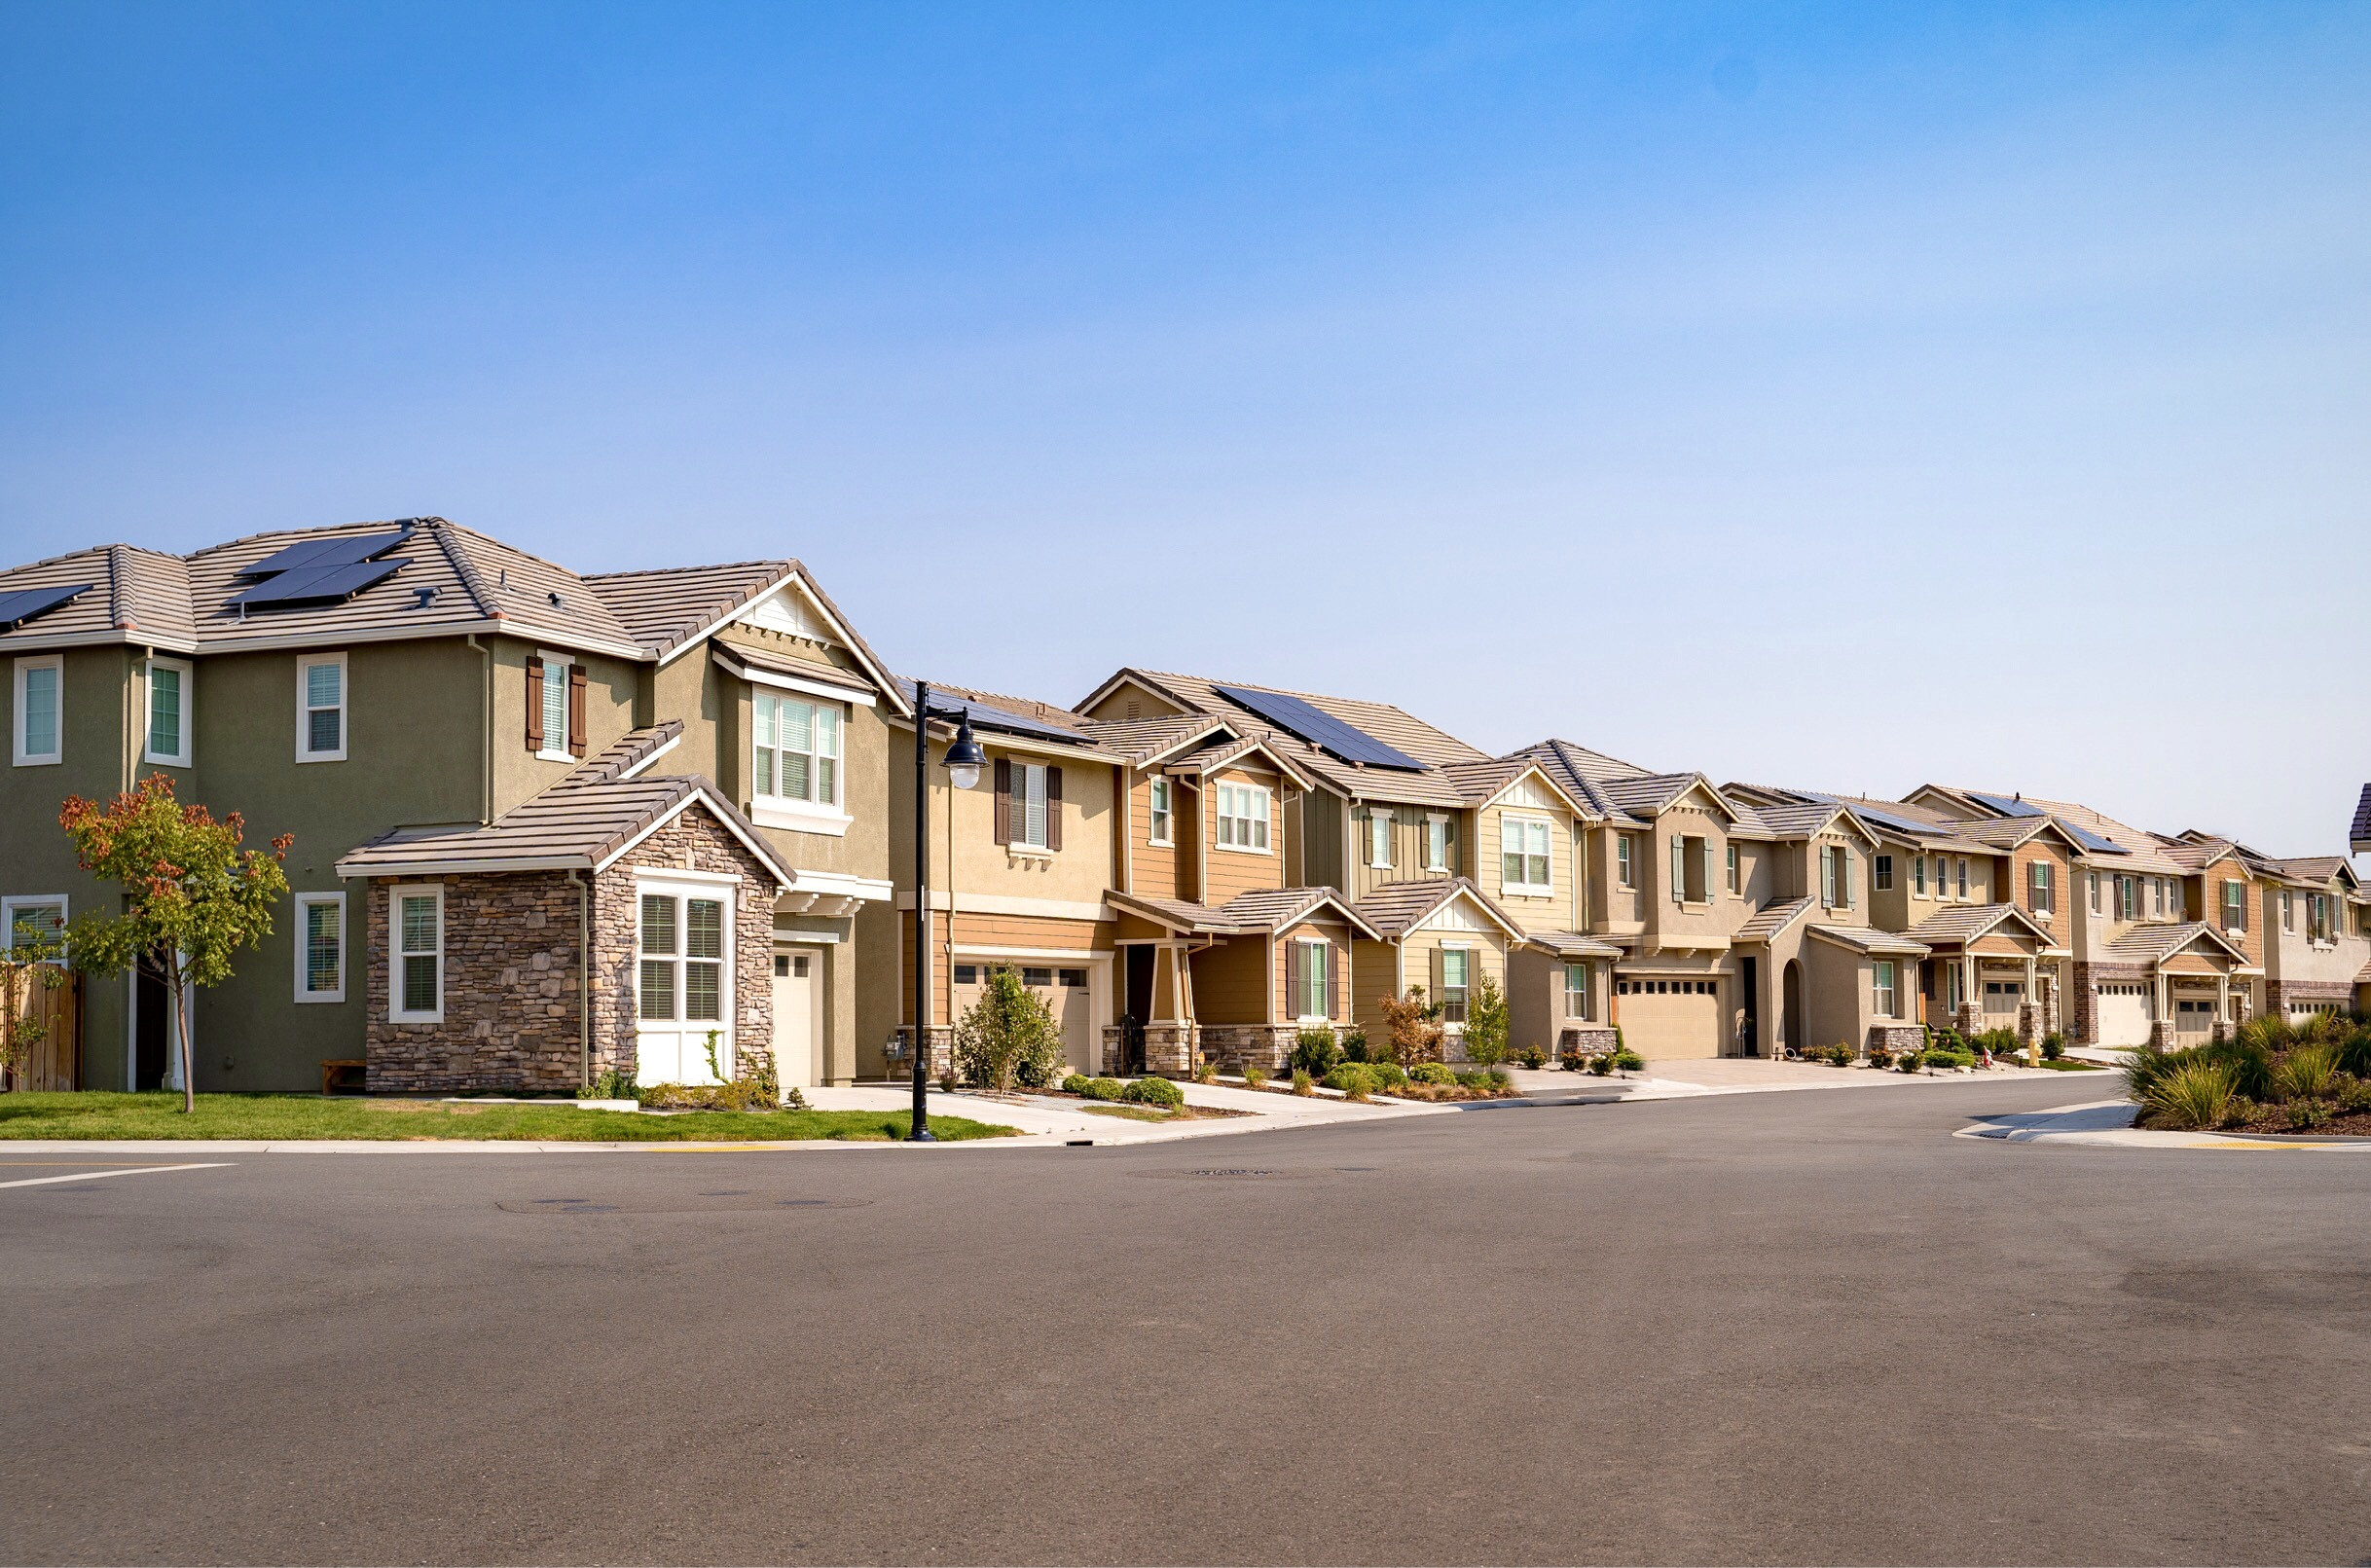 row of houses on a suburban street